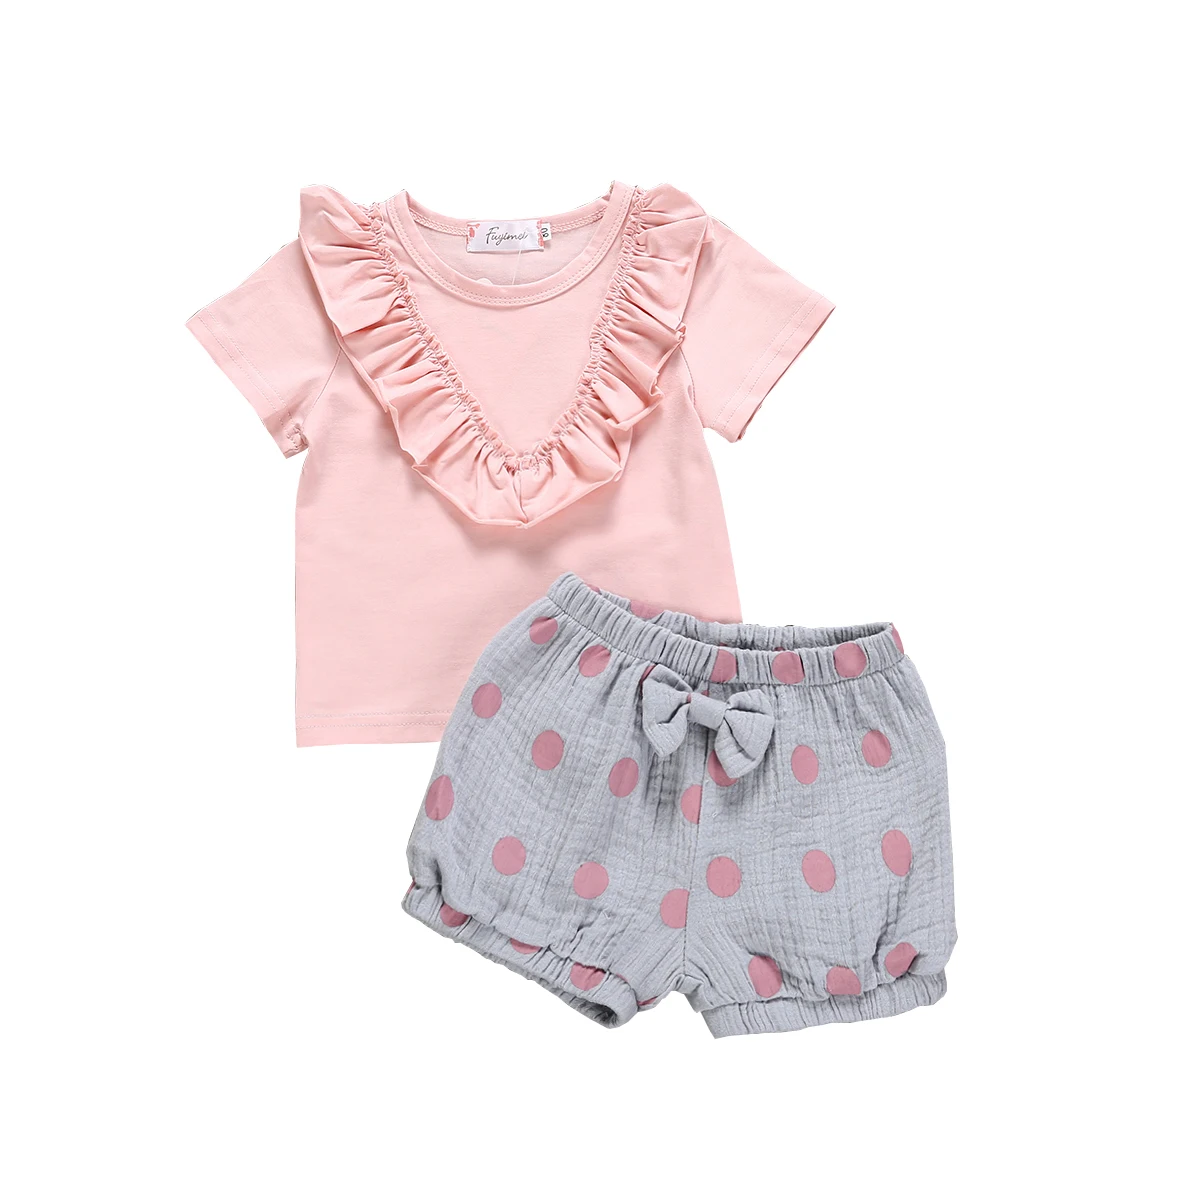 Pydcoco/Детские топы с оборками для маленьких девочек, футболка, Короткие штаны в горошек, комплект повседневной одежды из 2 предметов, летний